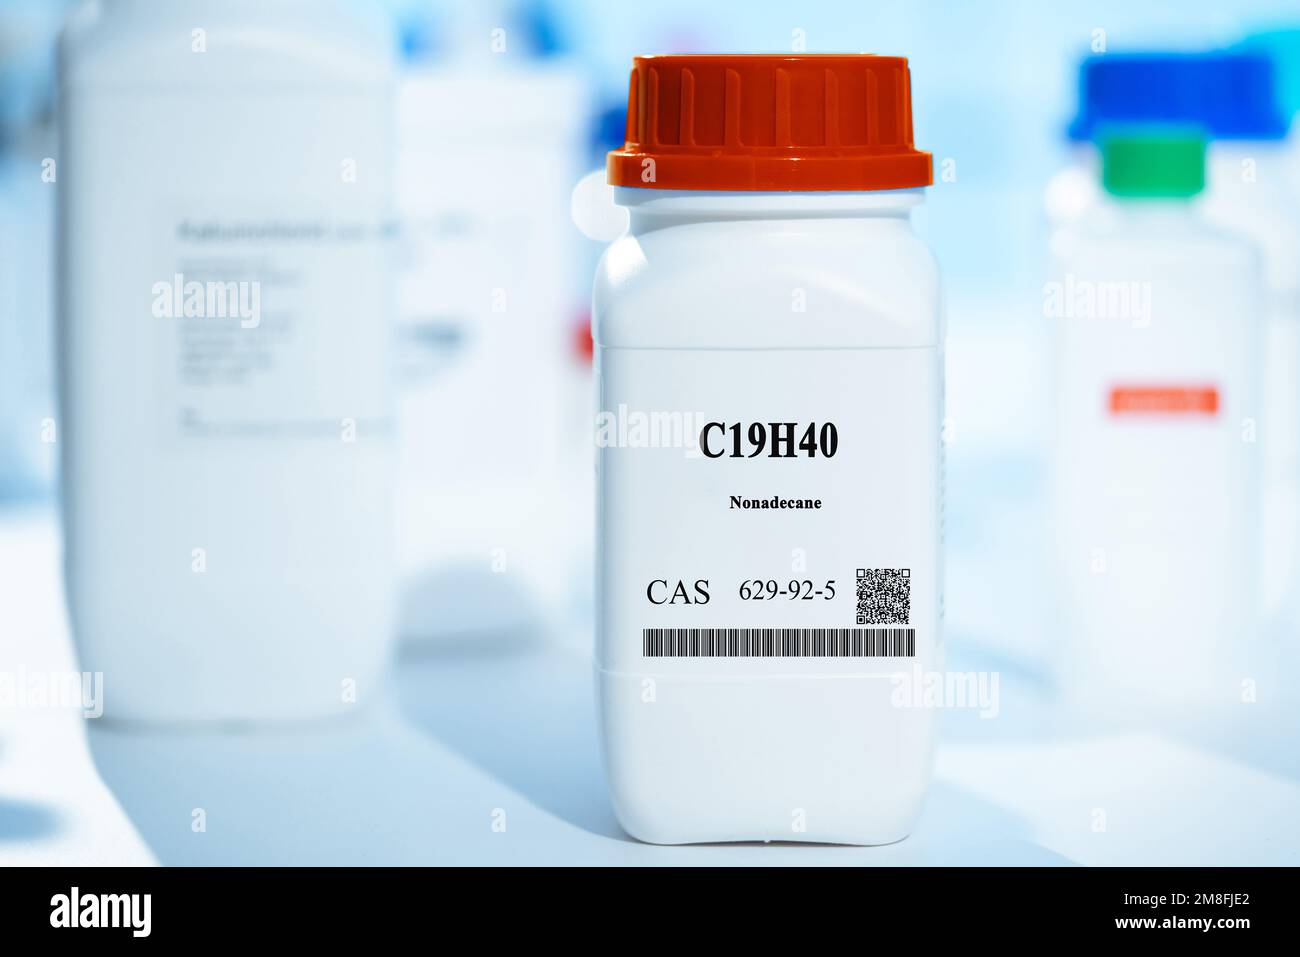 C19H40 nonadecane CAS 629-92-5 sostanza chimica in imballaggi di plastica bianca da laboratorio Foto Stock